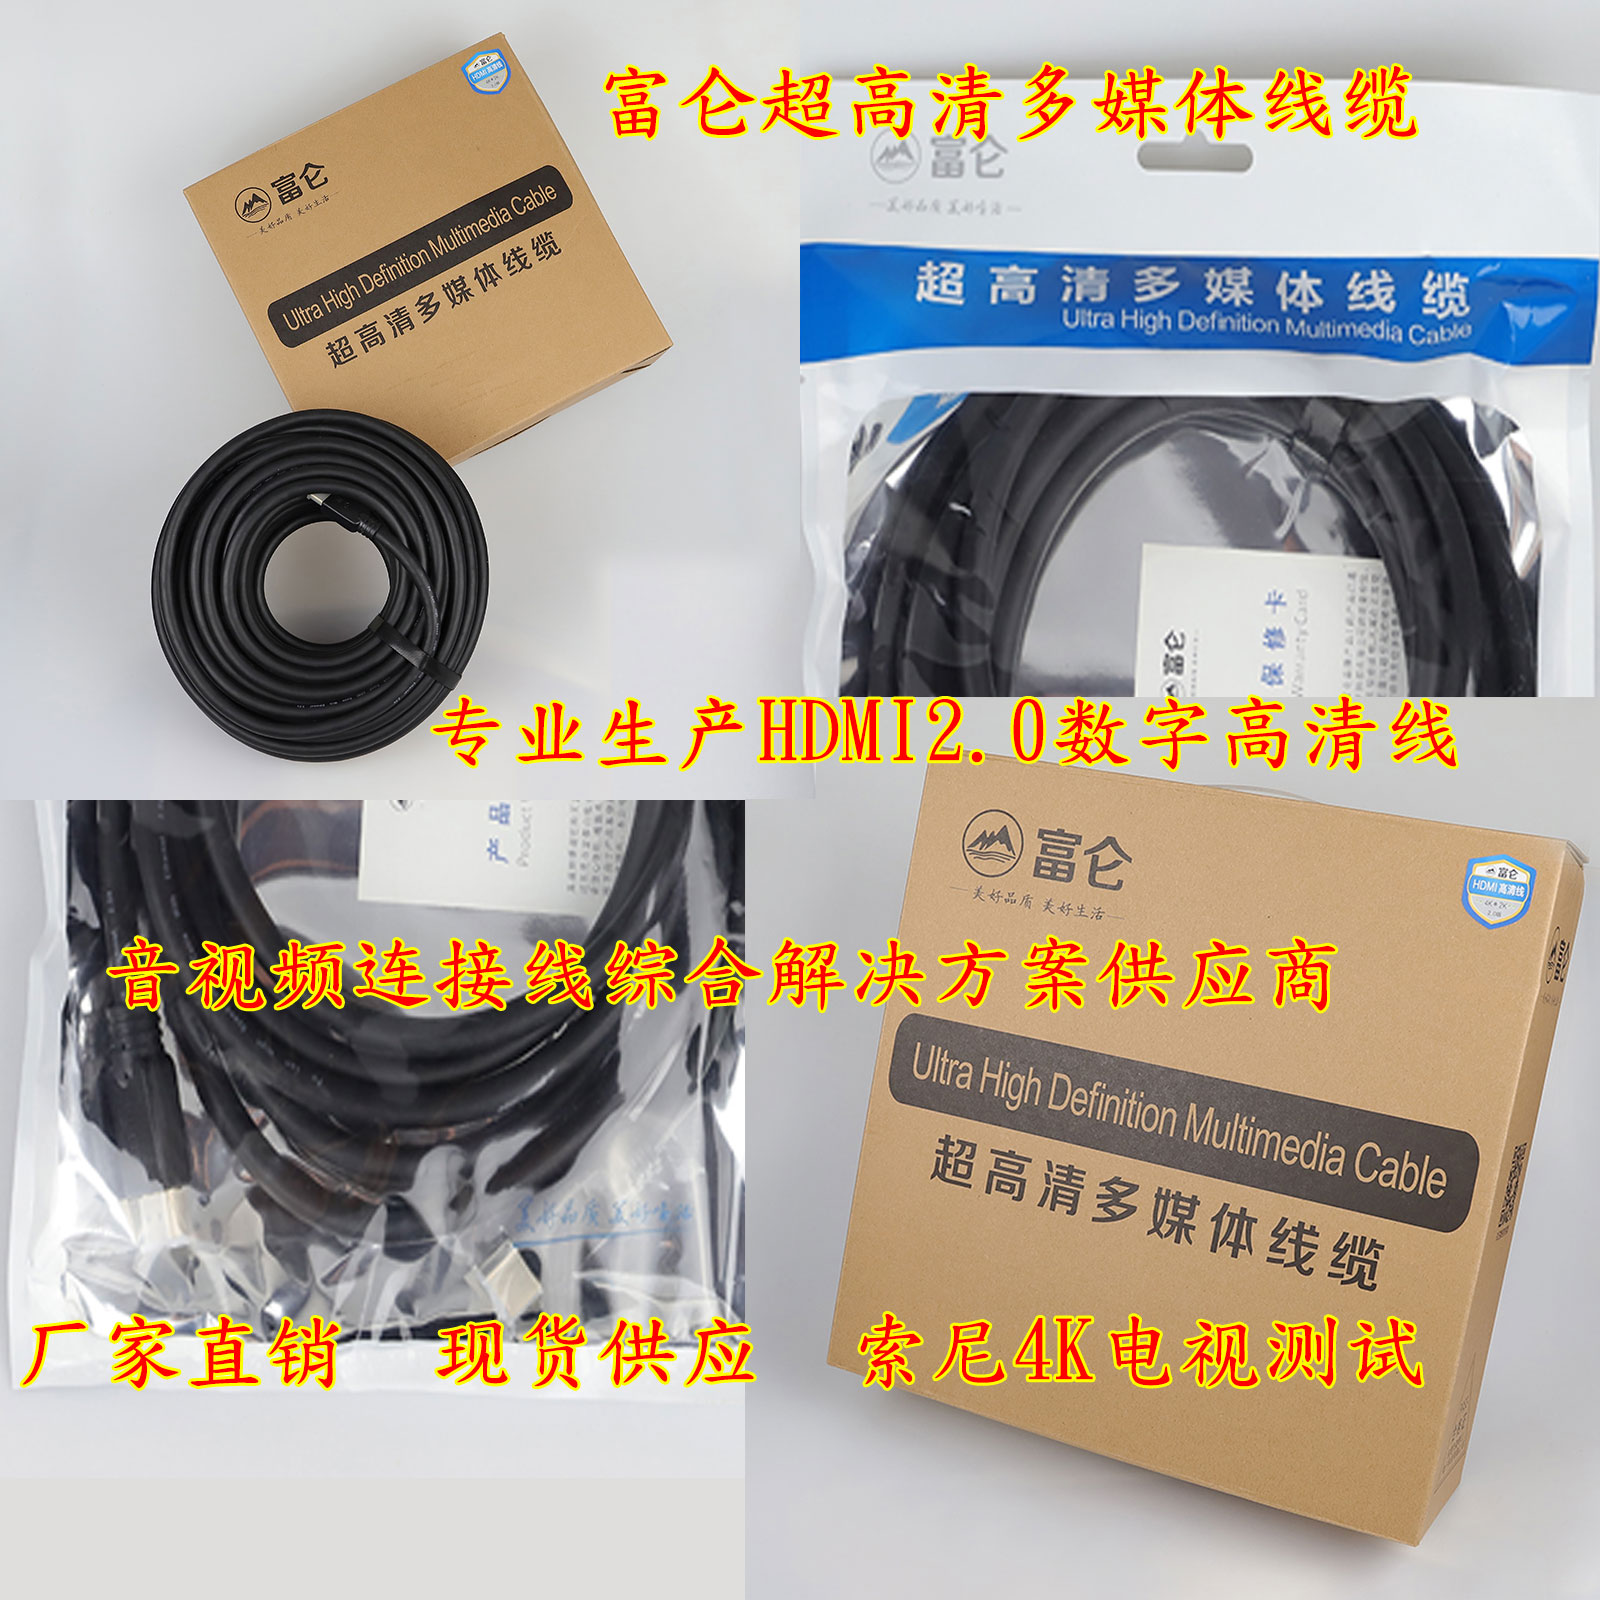 东莞富仑HDMI 光纤HDMI 通过TDR眼图测试